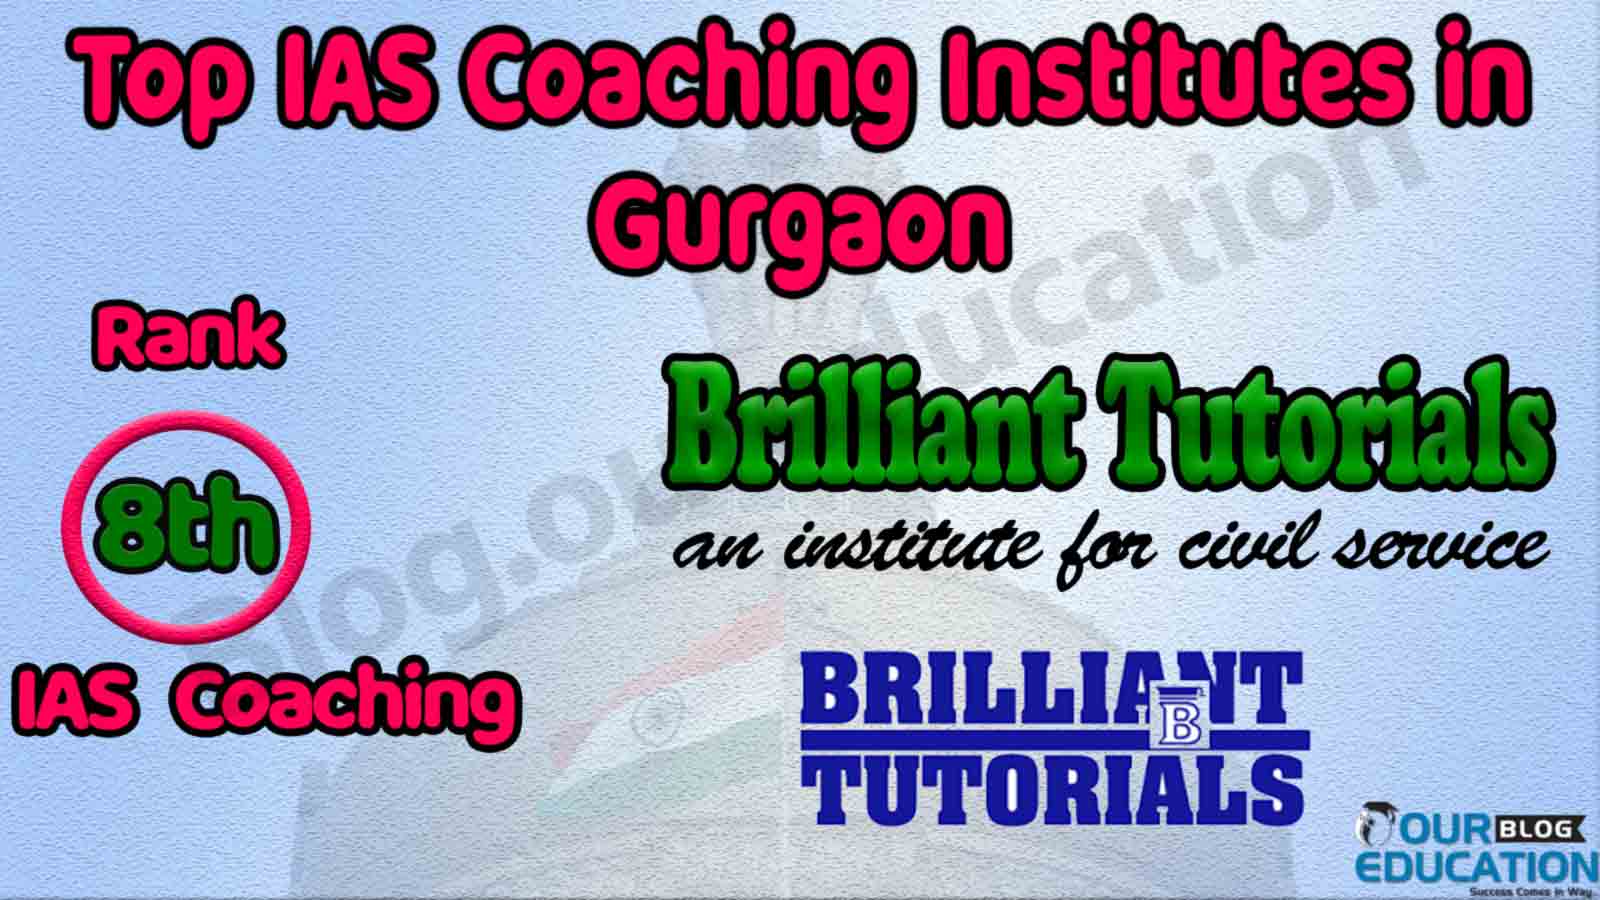 Top IAS Coaching Institute in Gurgaon